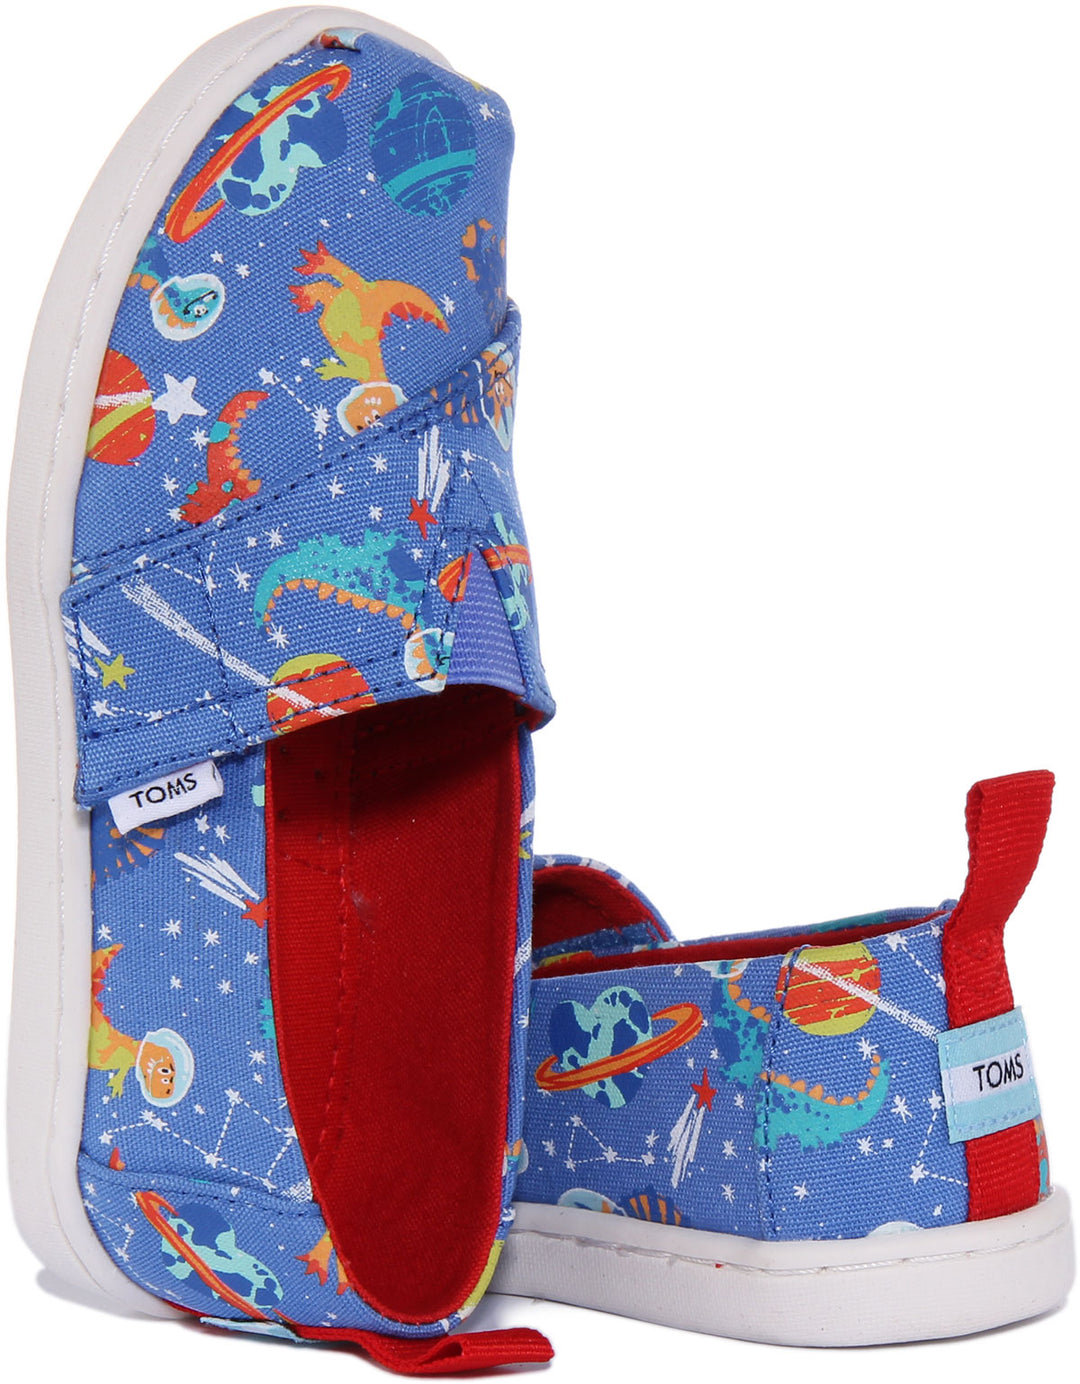 Toms Ultramarine Alpargata Zapatillas de lona con estampado de dinosaurios para bebés en azul